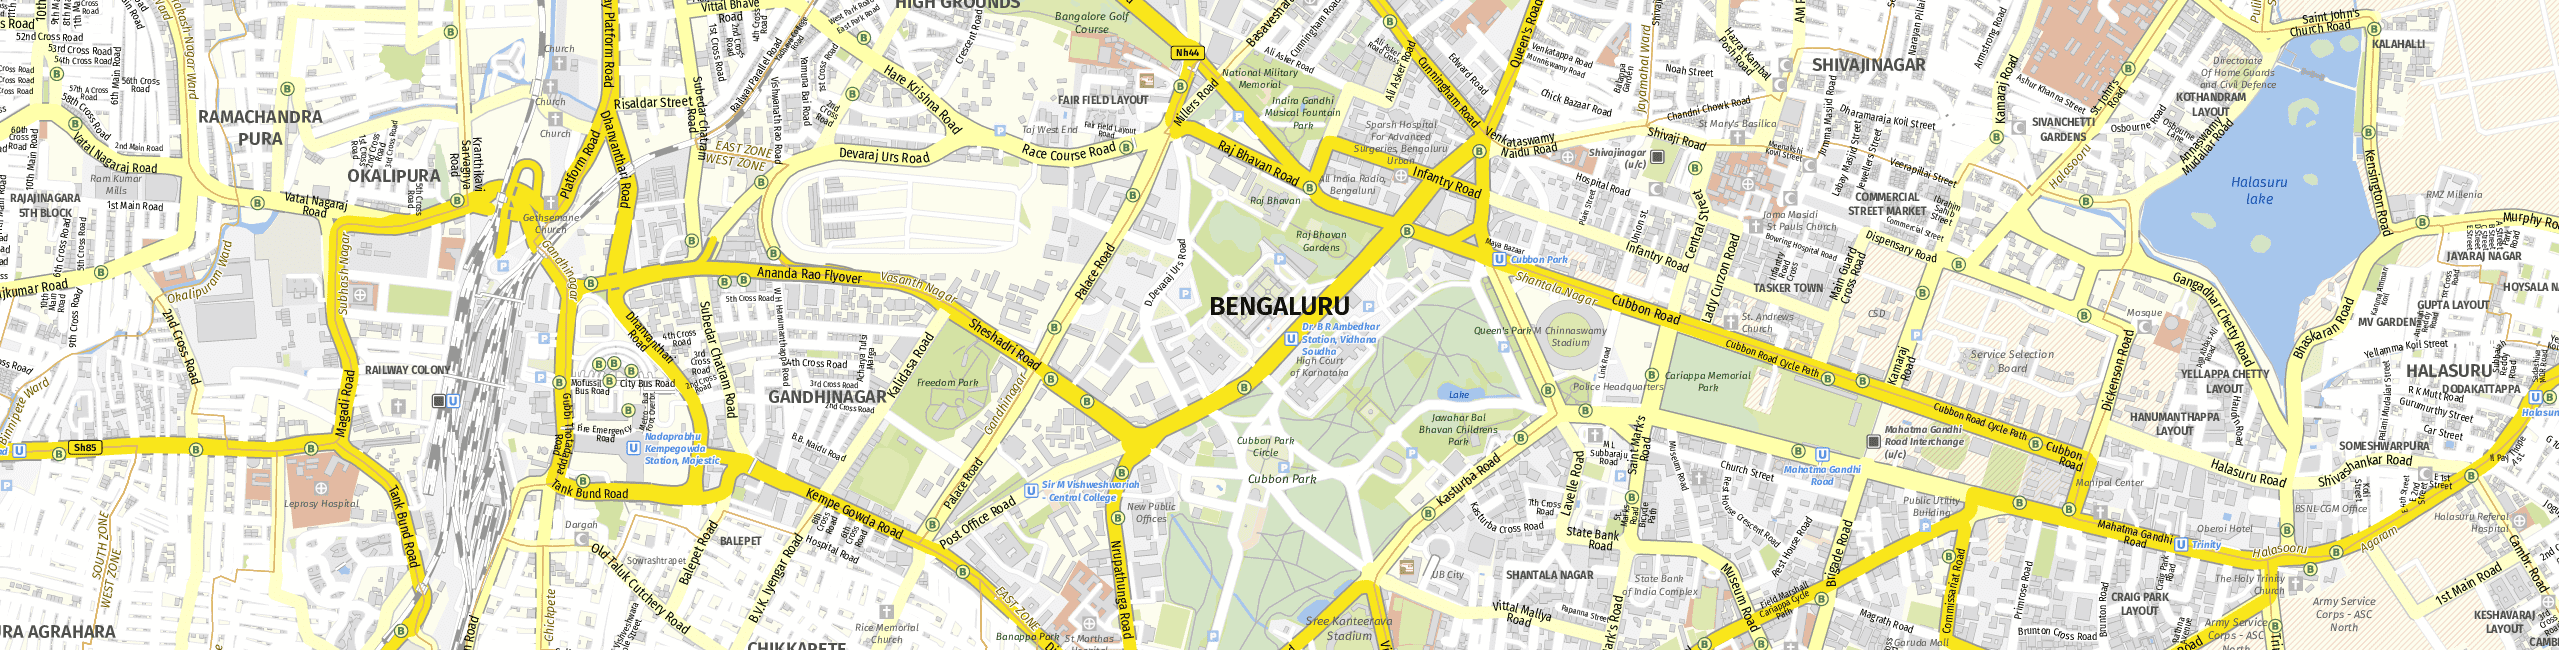 Stadtplan Bengaluru zum Downloaden.